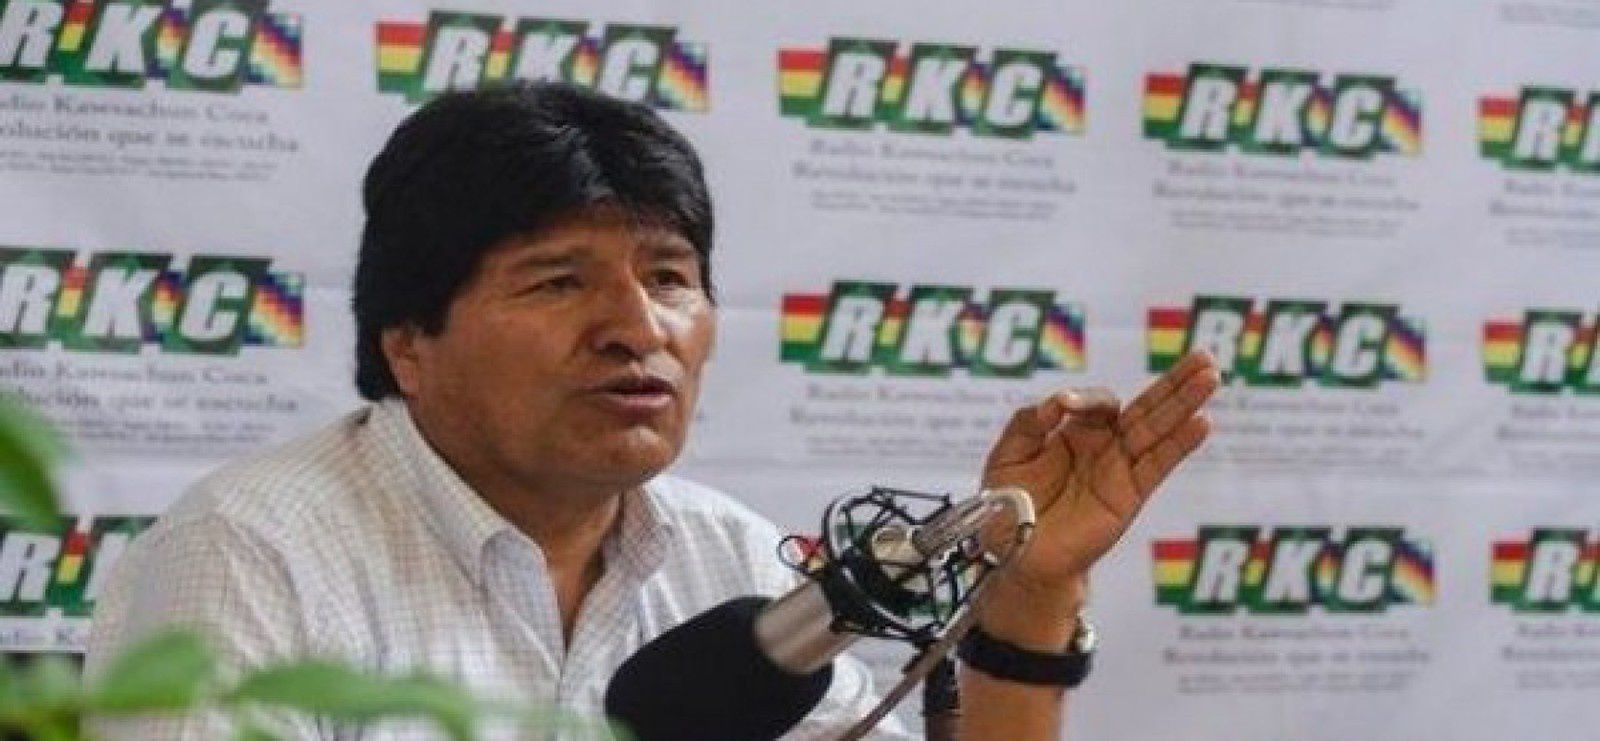 Le président Evo Morales dénonce la menace d’une intervention états-unienne au Venezuela (TeleSUR)